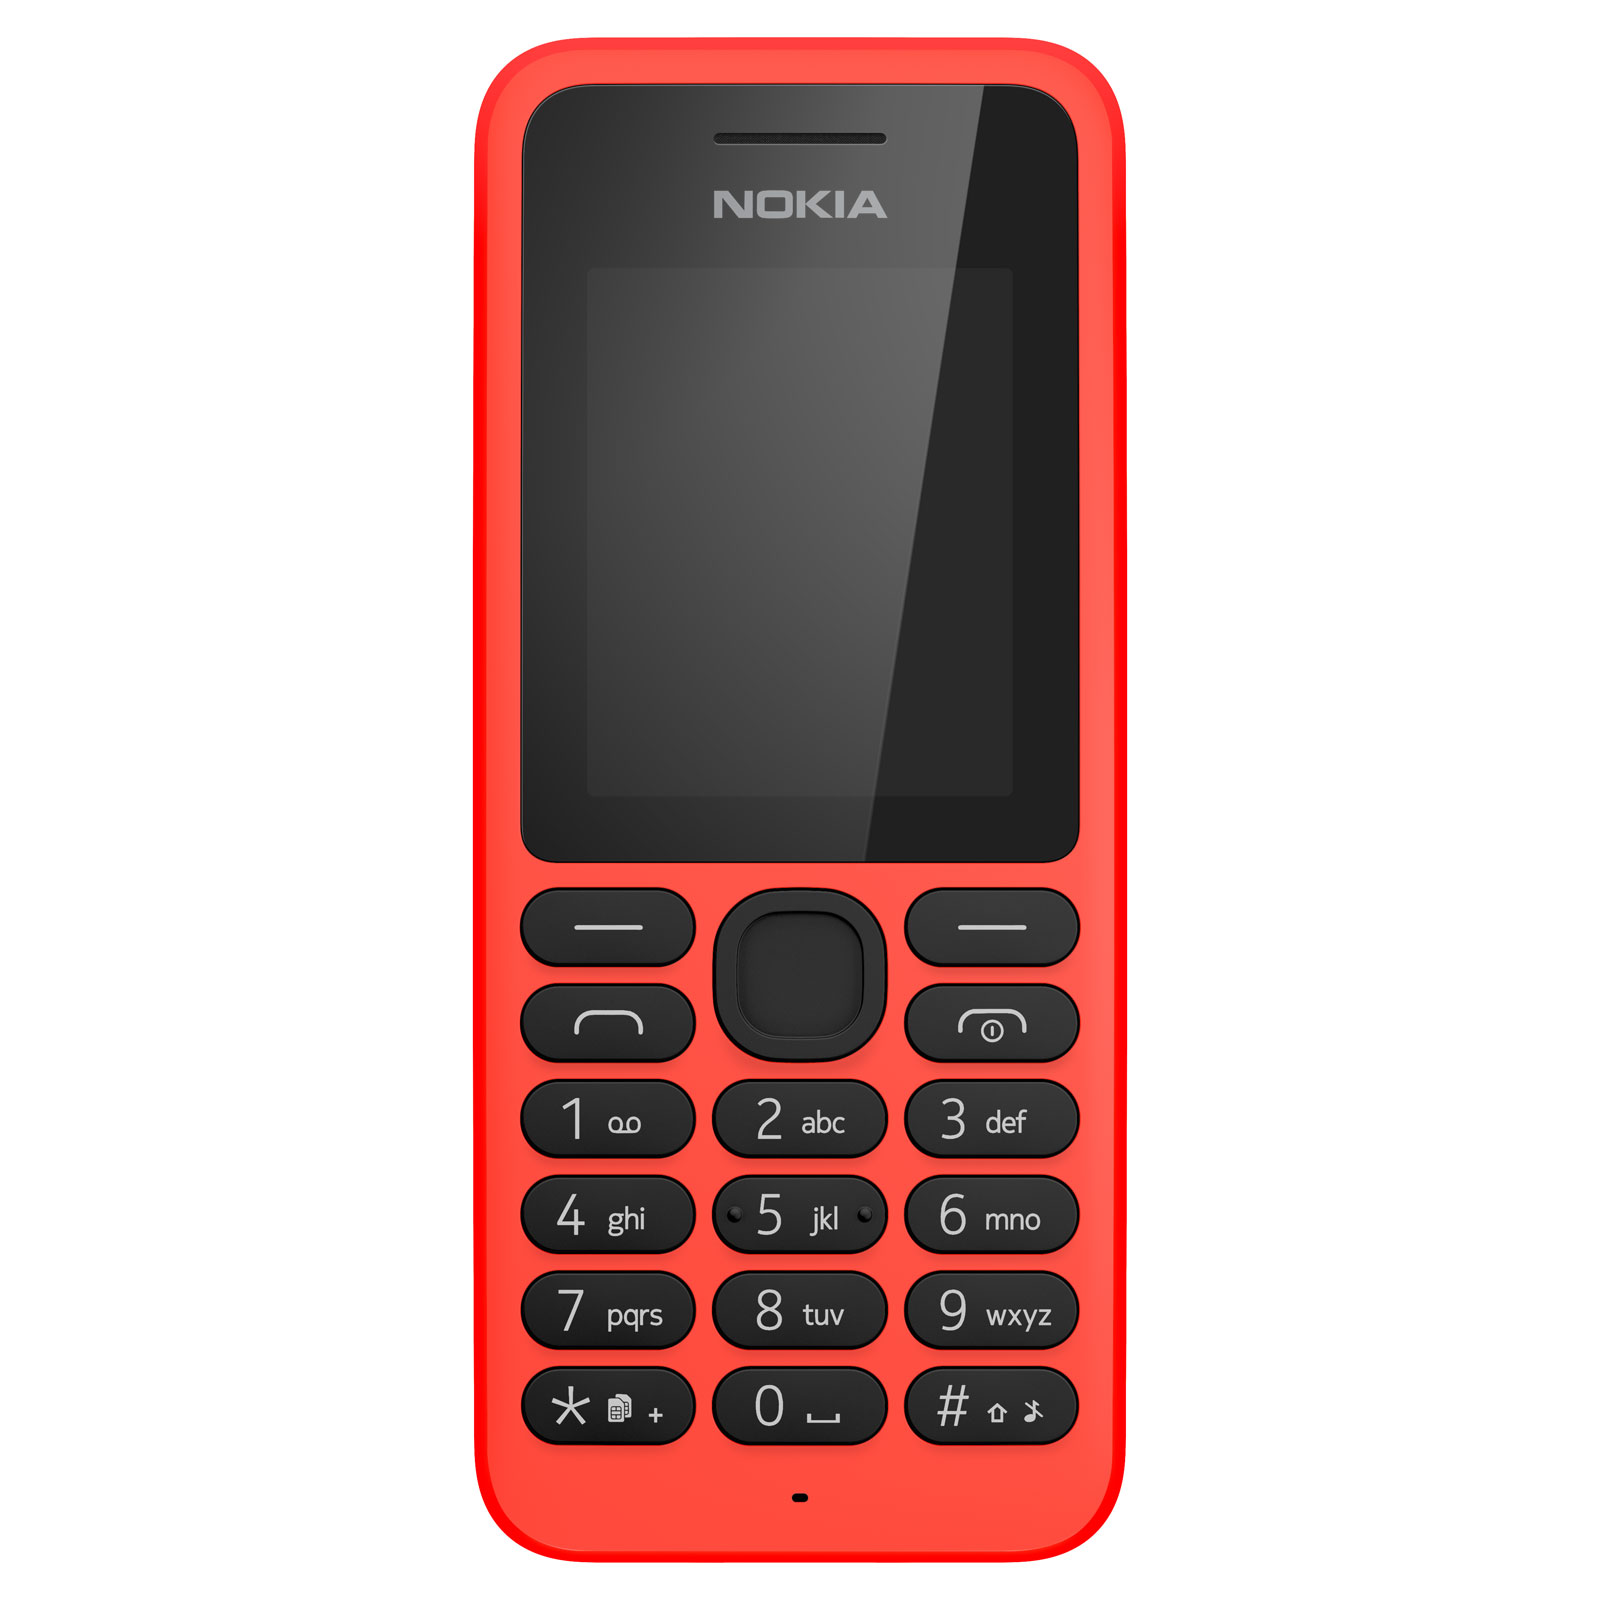 Картинка телефона нокиа. Nokia 130 DS Red. Nokia 130 Dual SIM. Nokia 130 Dual SIM RM-1035. Nokia 130 DS 2017.